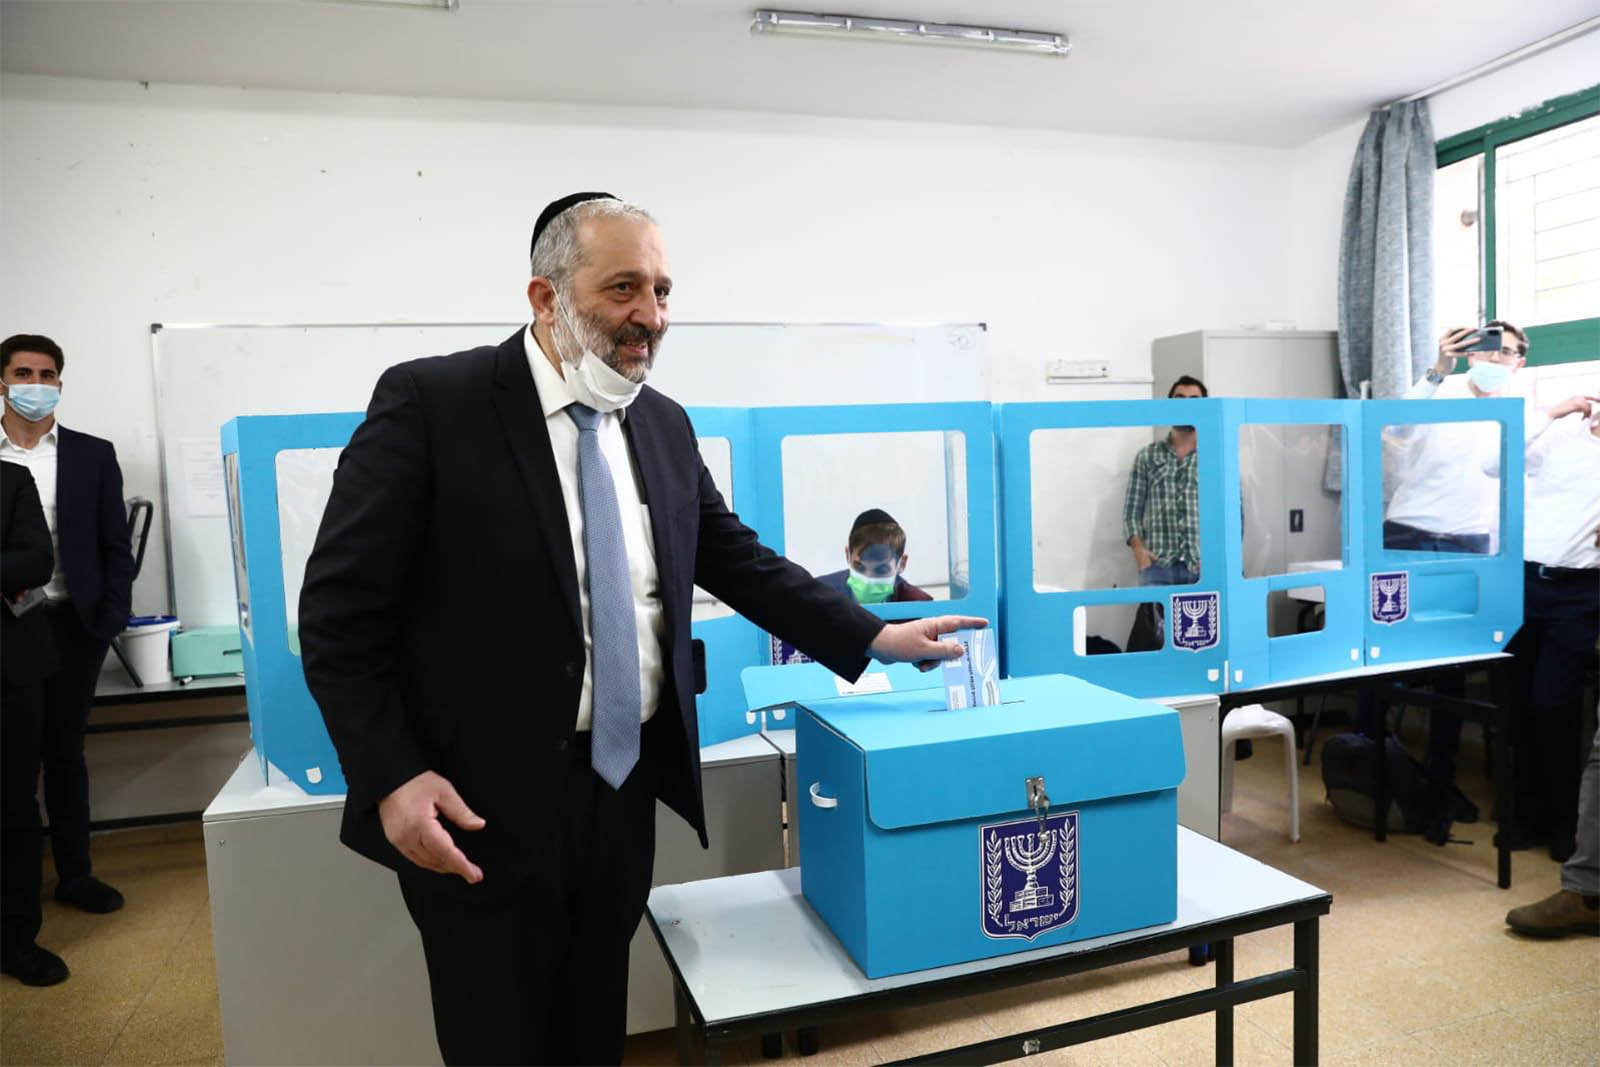 שר הפנים דרעי מצביע בבחירות לכנסת ה-24 (צילום: יעקב כהן)